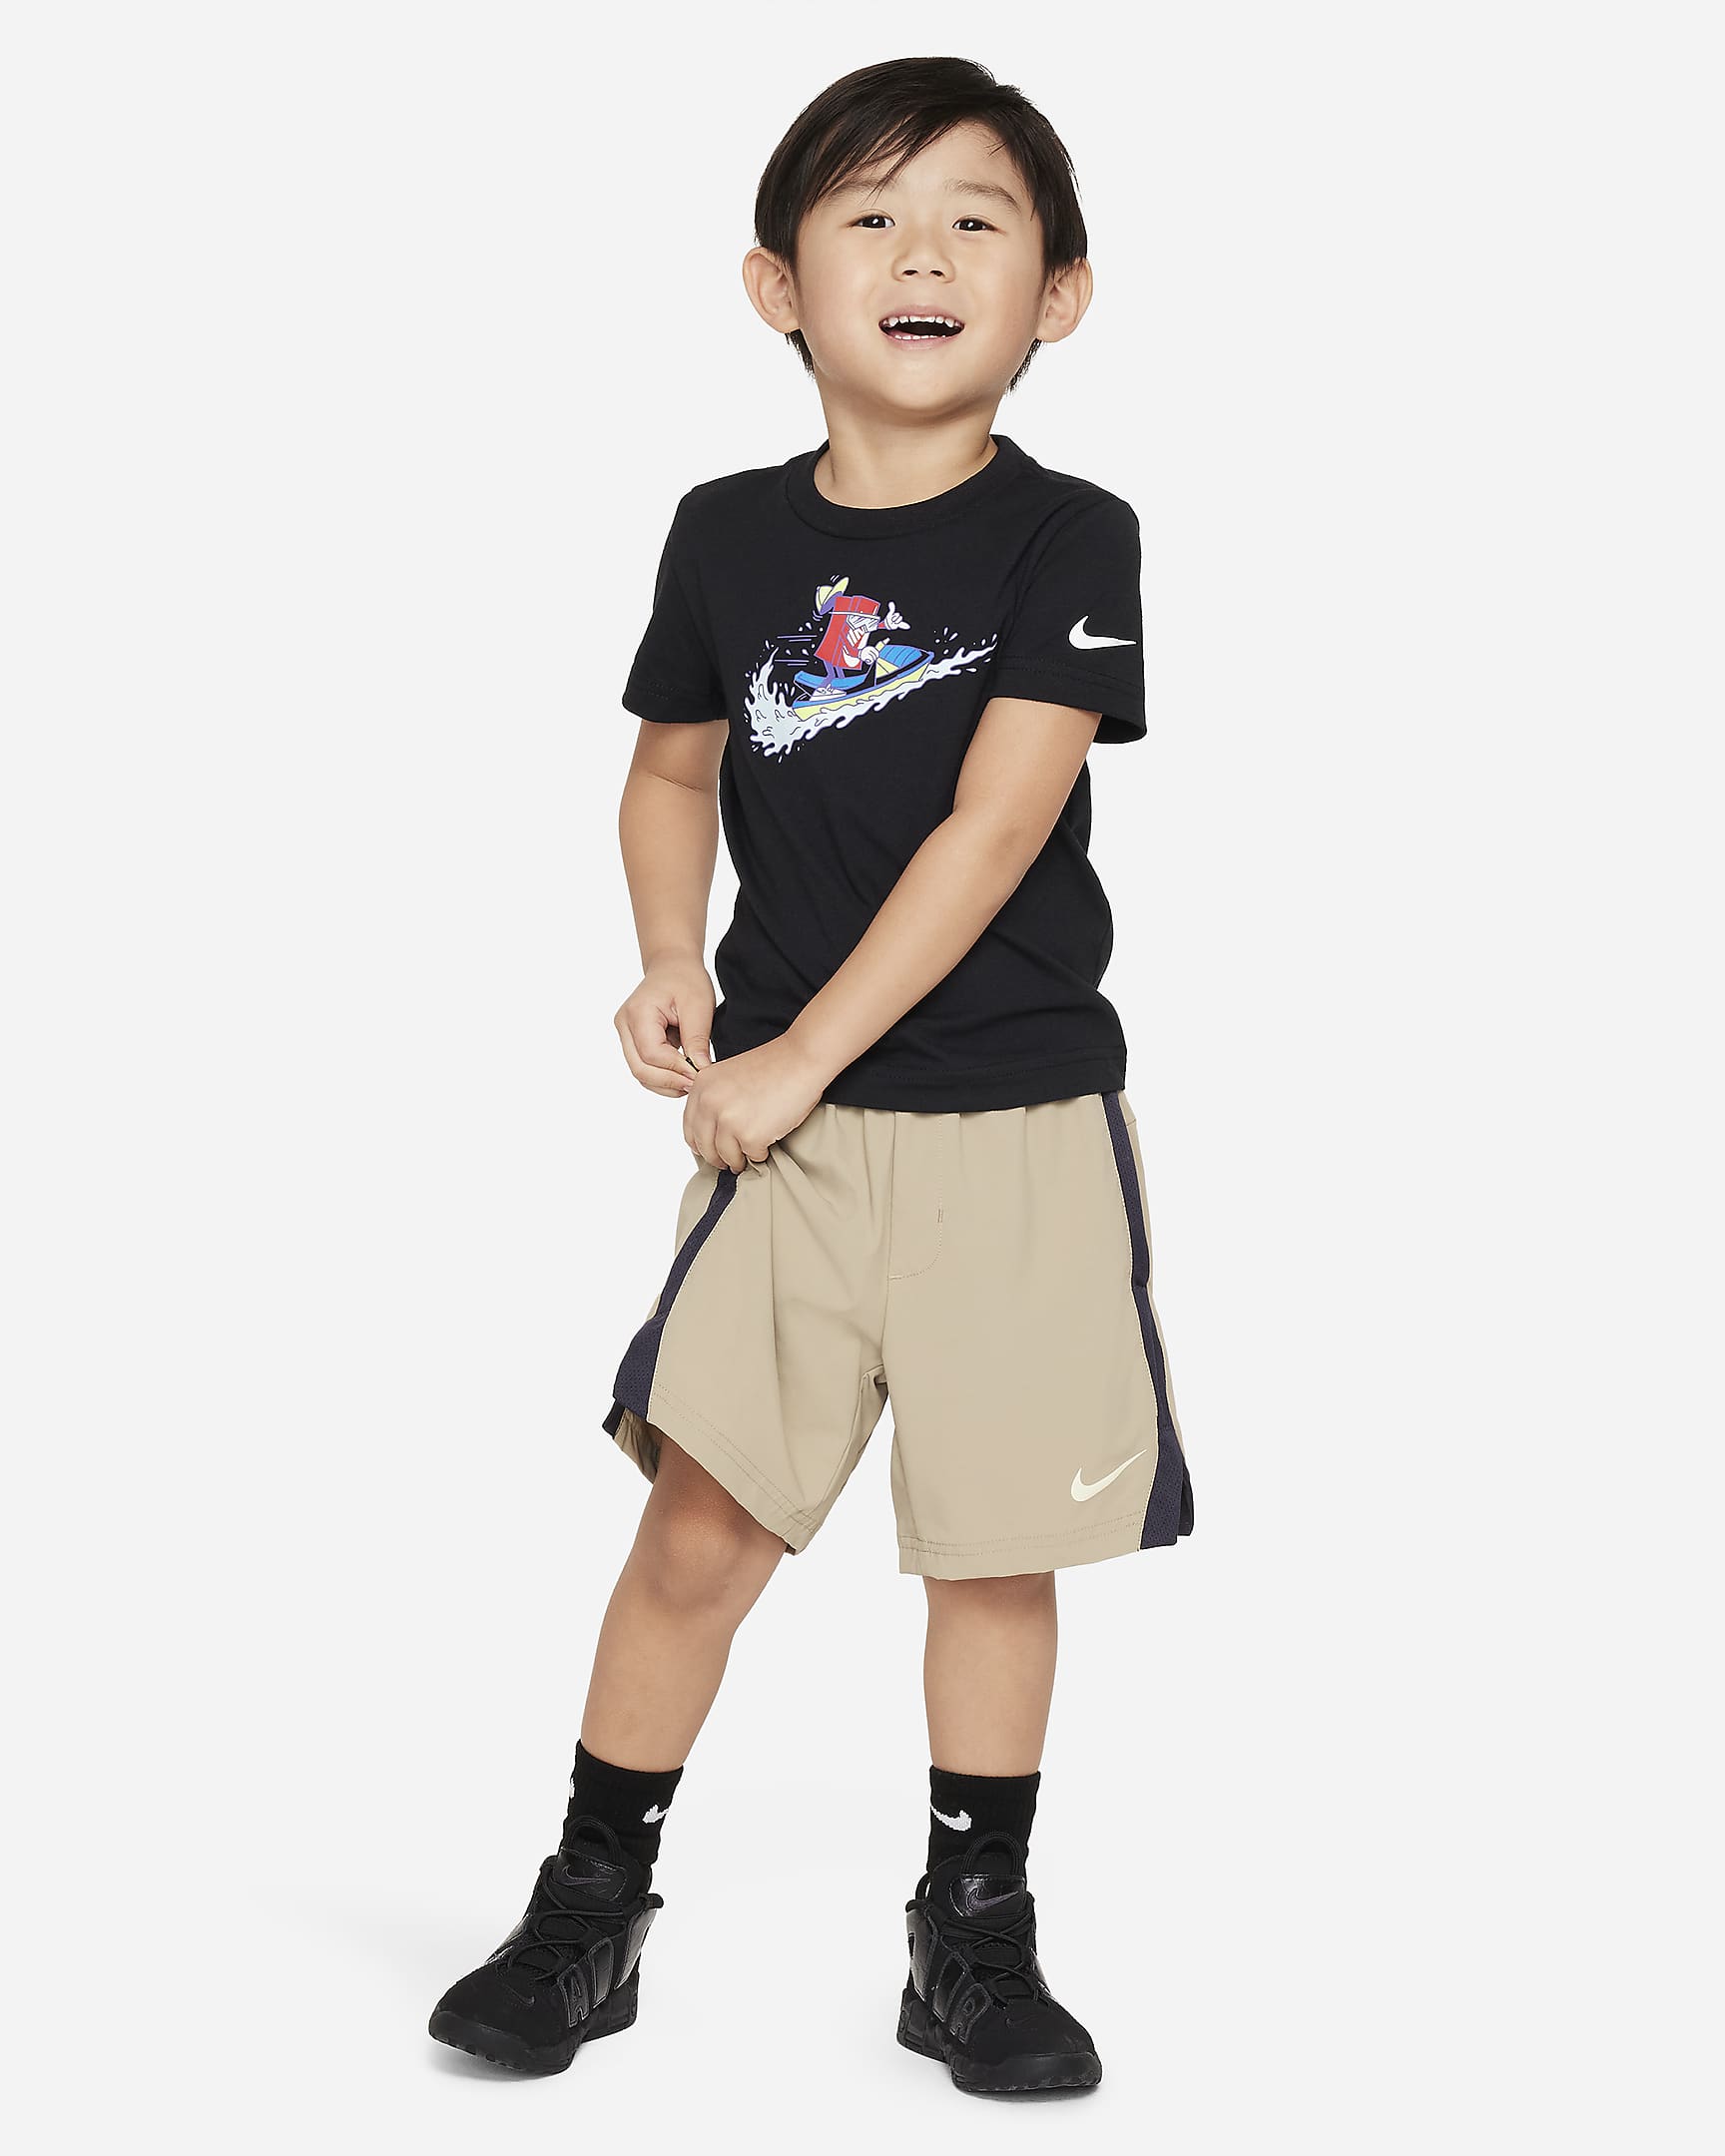 Playera cuadrada Jet Ski infantil Nike. Nike.com